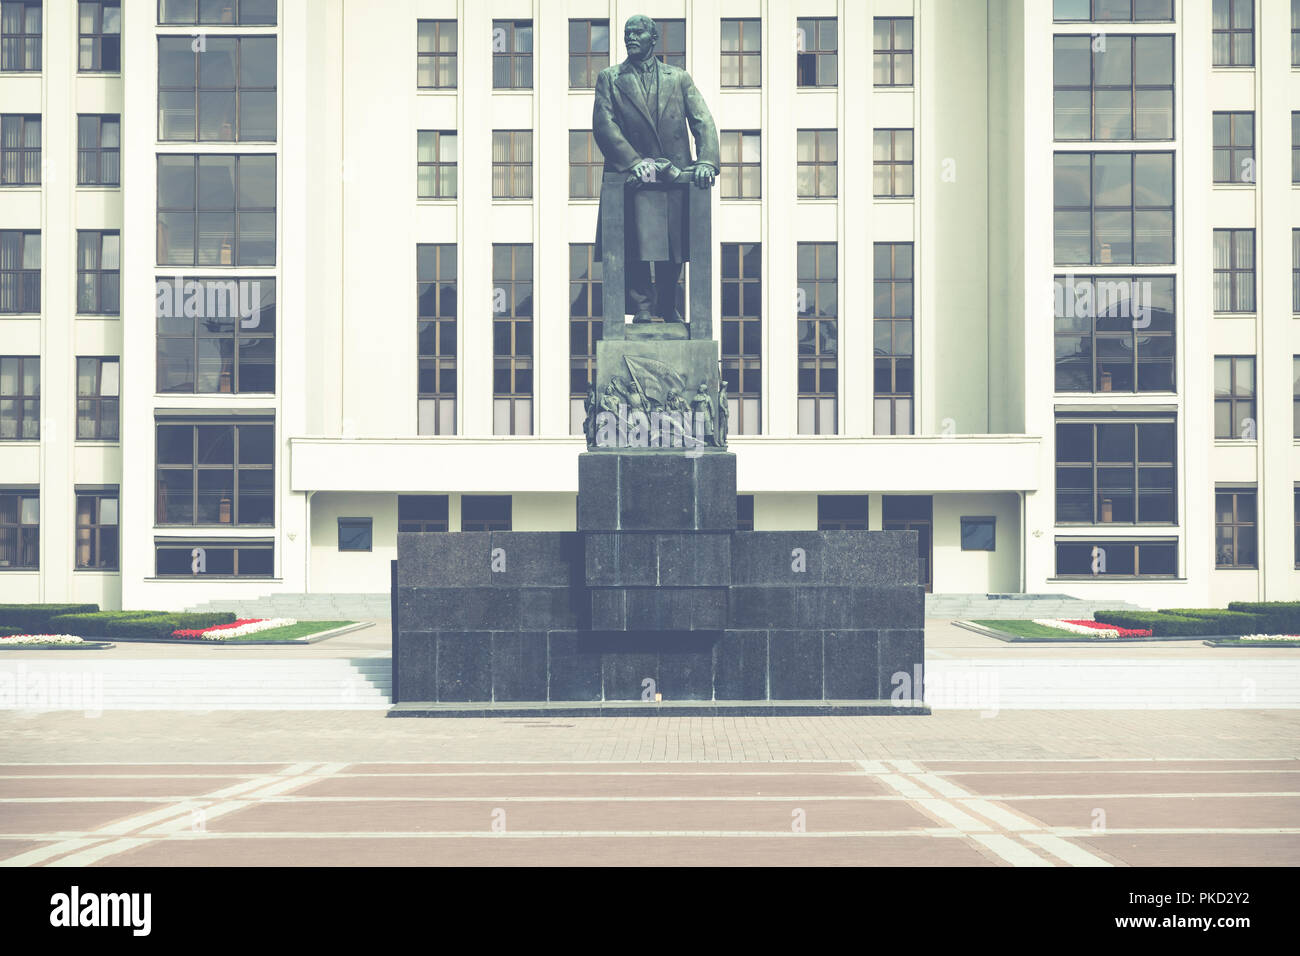 MINSK, Bielorussia - 11 settembre 2018: Monumento di Lenin vicino al Palazzo del Governo della Repubblica di Bielorussia. Piazza Indipendenza, Minsk, Bielorussia. Foto Stock